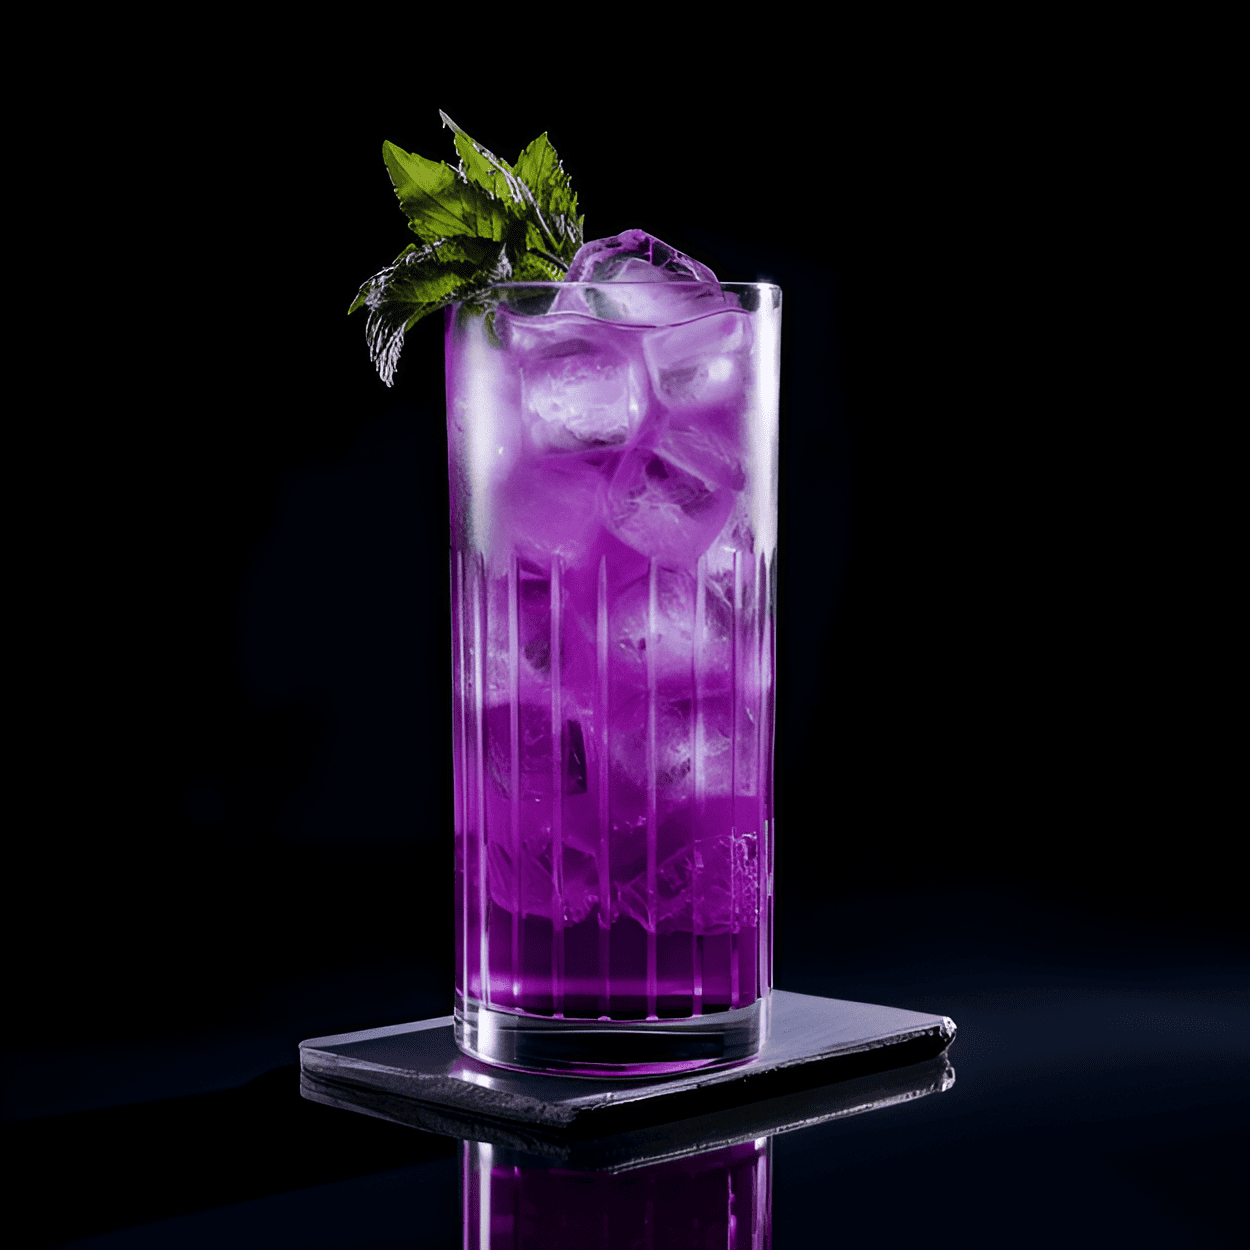 Purple Passion Cóctel Receta - El Purple Passion es un cóctel dulce y afrutado. Tiene un sabor vibrante y ácido con un toque de cítricos. El cóctel es ligero y refrescante, lo que lo convierte en una excelente opción para un día caluroso de verano.